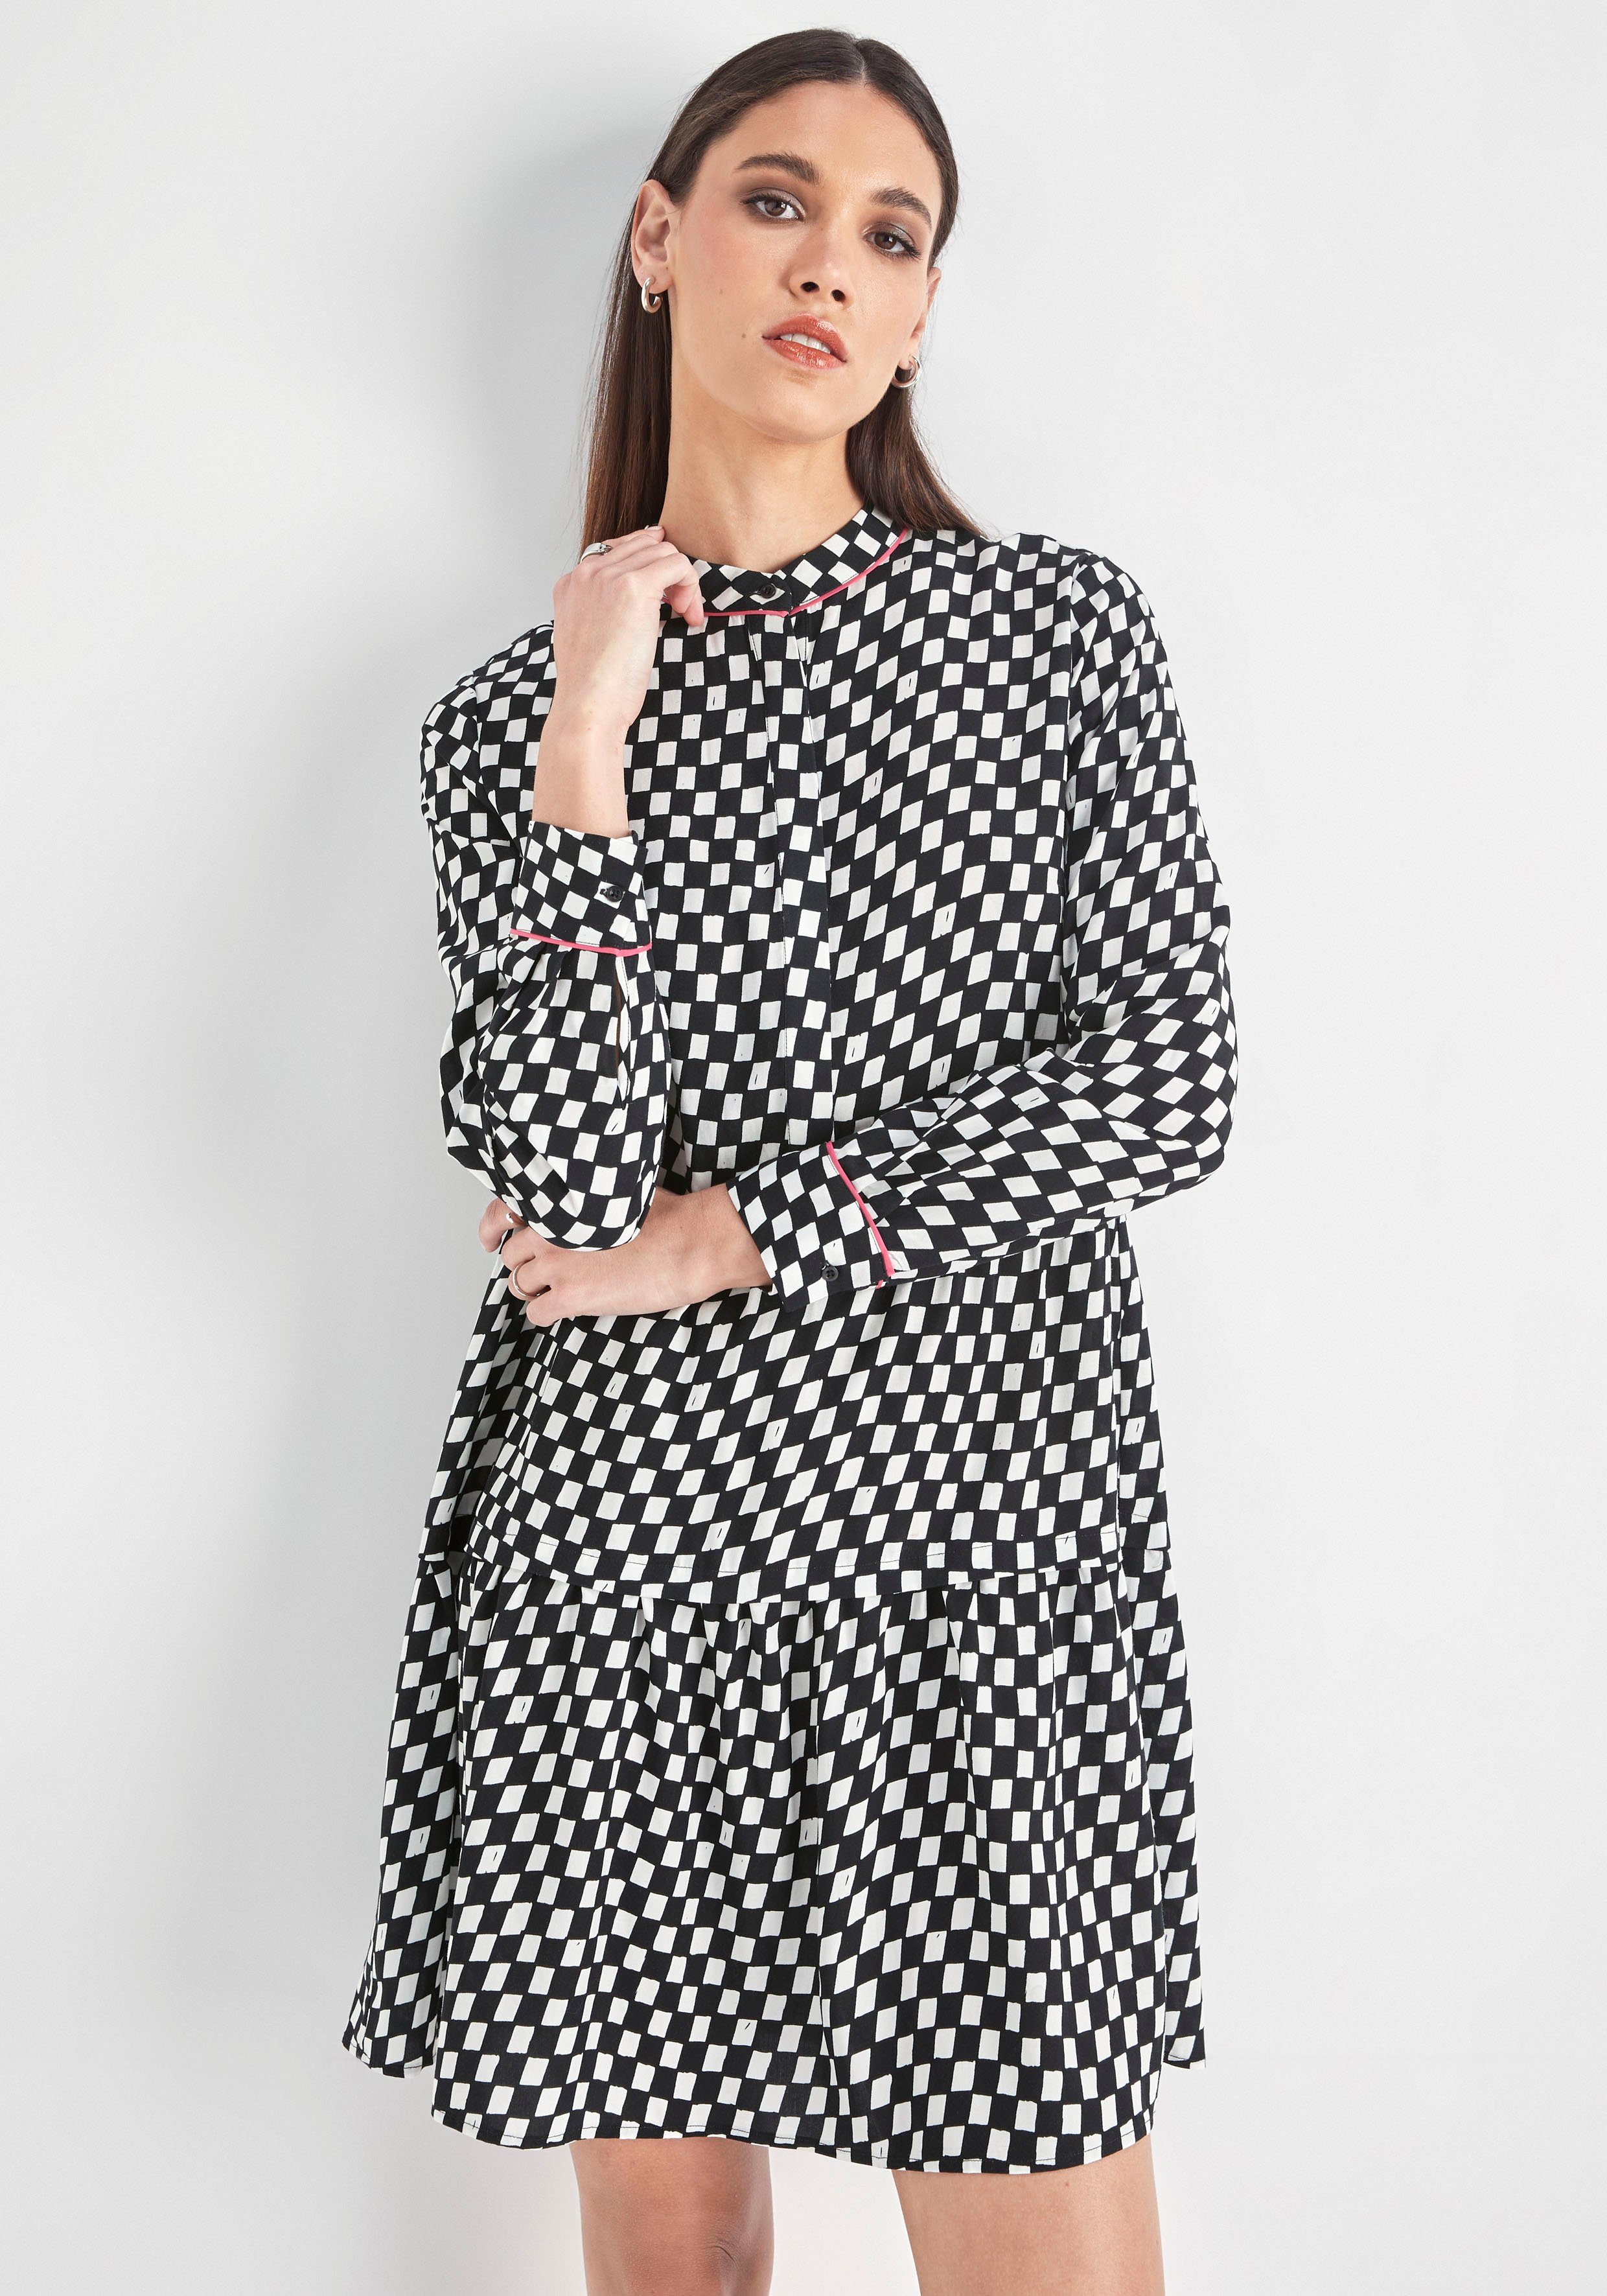 HECHTER PARIS Blusenkleid mit Print schwarz weiß | Gemusterte Kleider